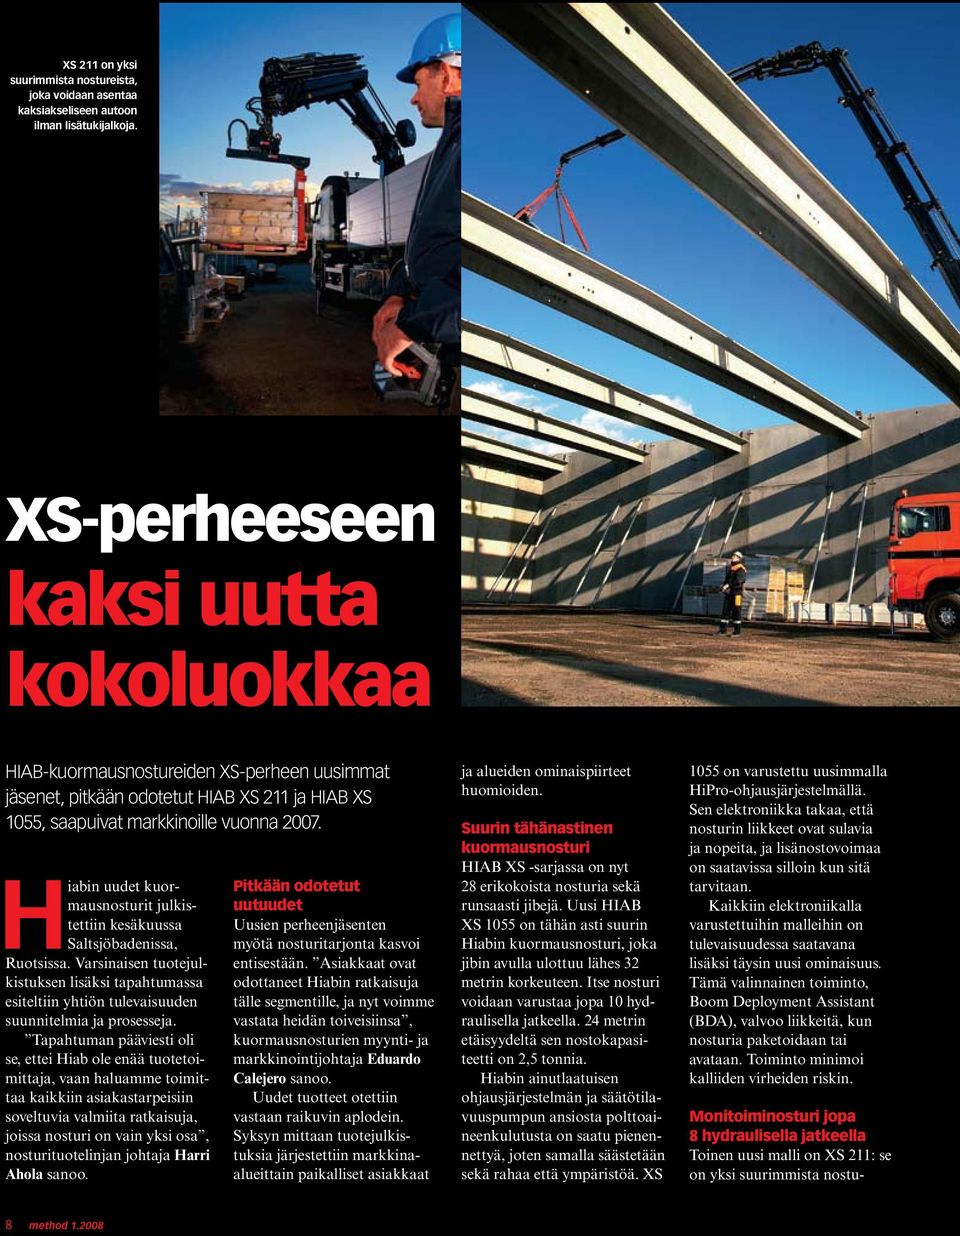 Hiabin uudet kuormausnosturit julkistettiin kesäkuussa Saltsjöbadenissa, Ruotsissa. Varsinaisen tuotejulkistuksen lisäksi tapahtumassa esiteltiin yhtiön tulevaisuuden suunnitelmia ja prosesseja.